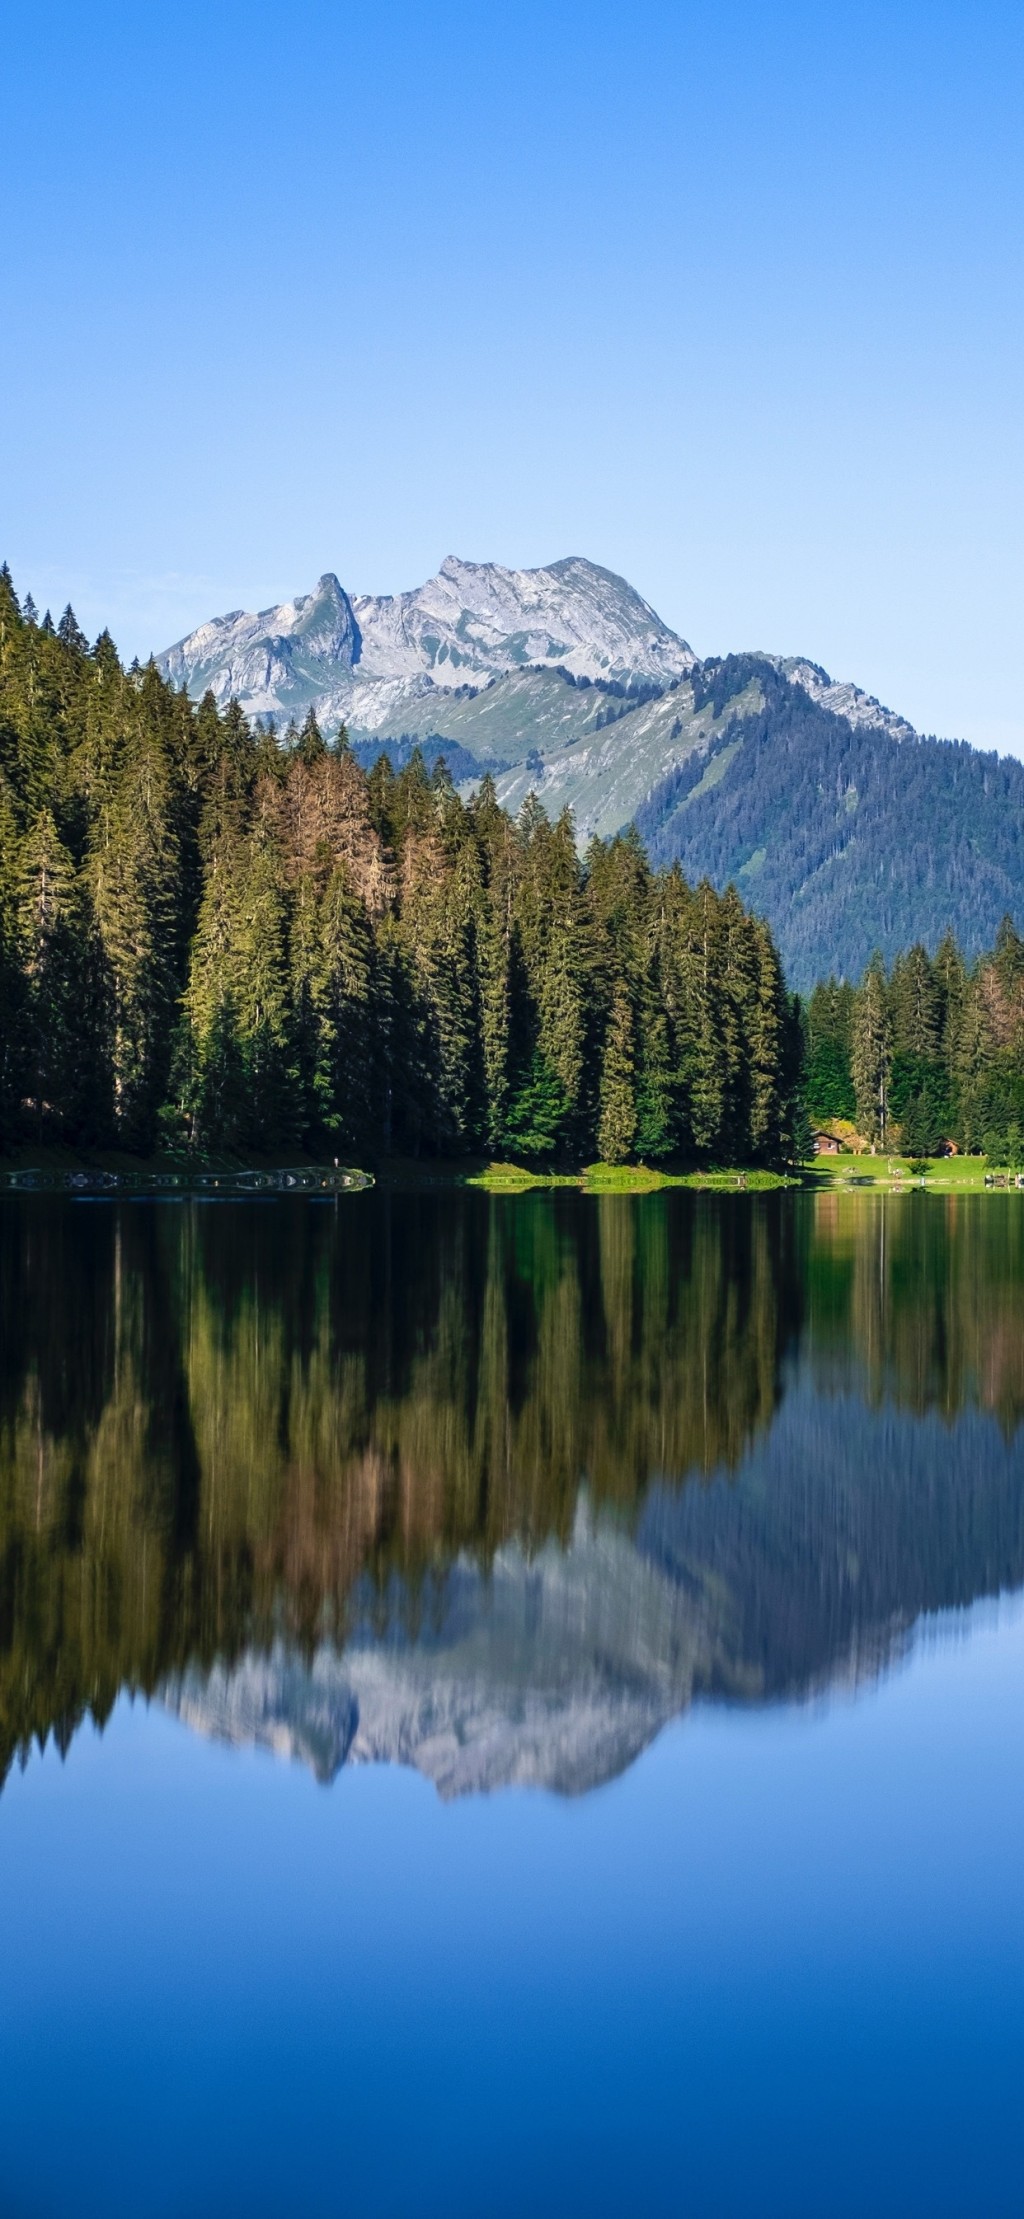 雪山湖水清新自然风景手机壁纸